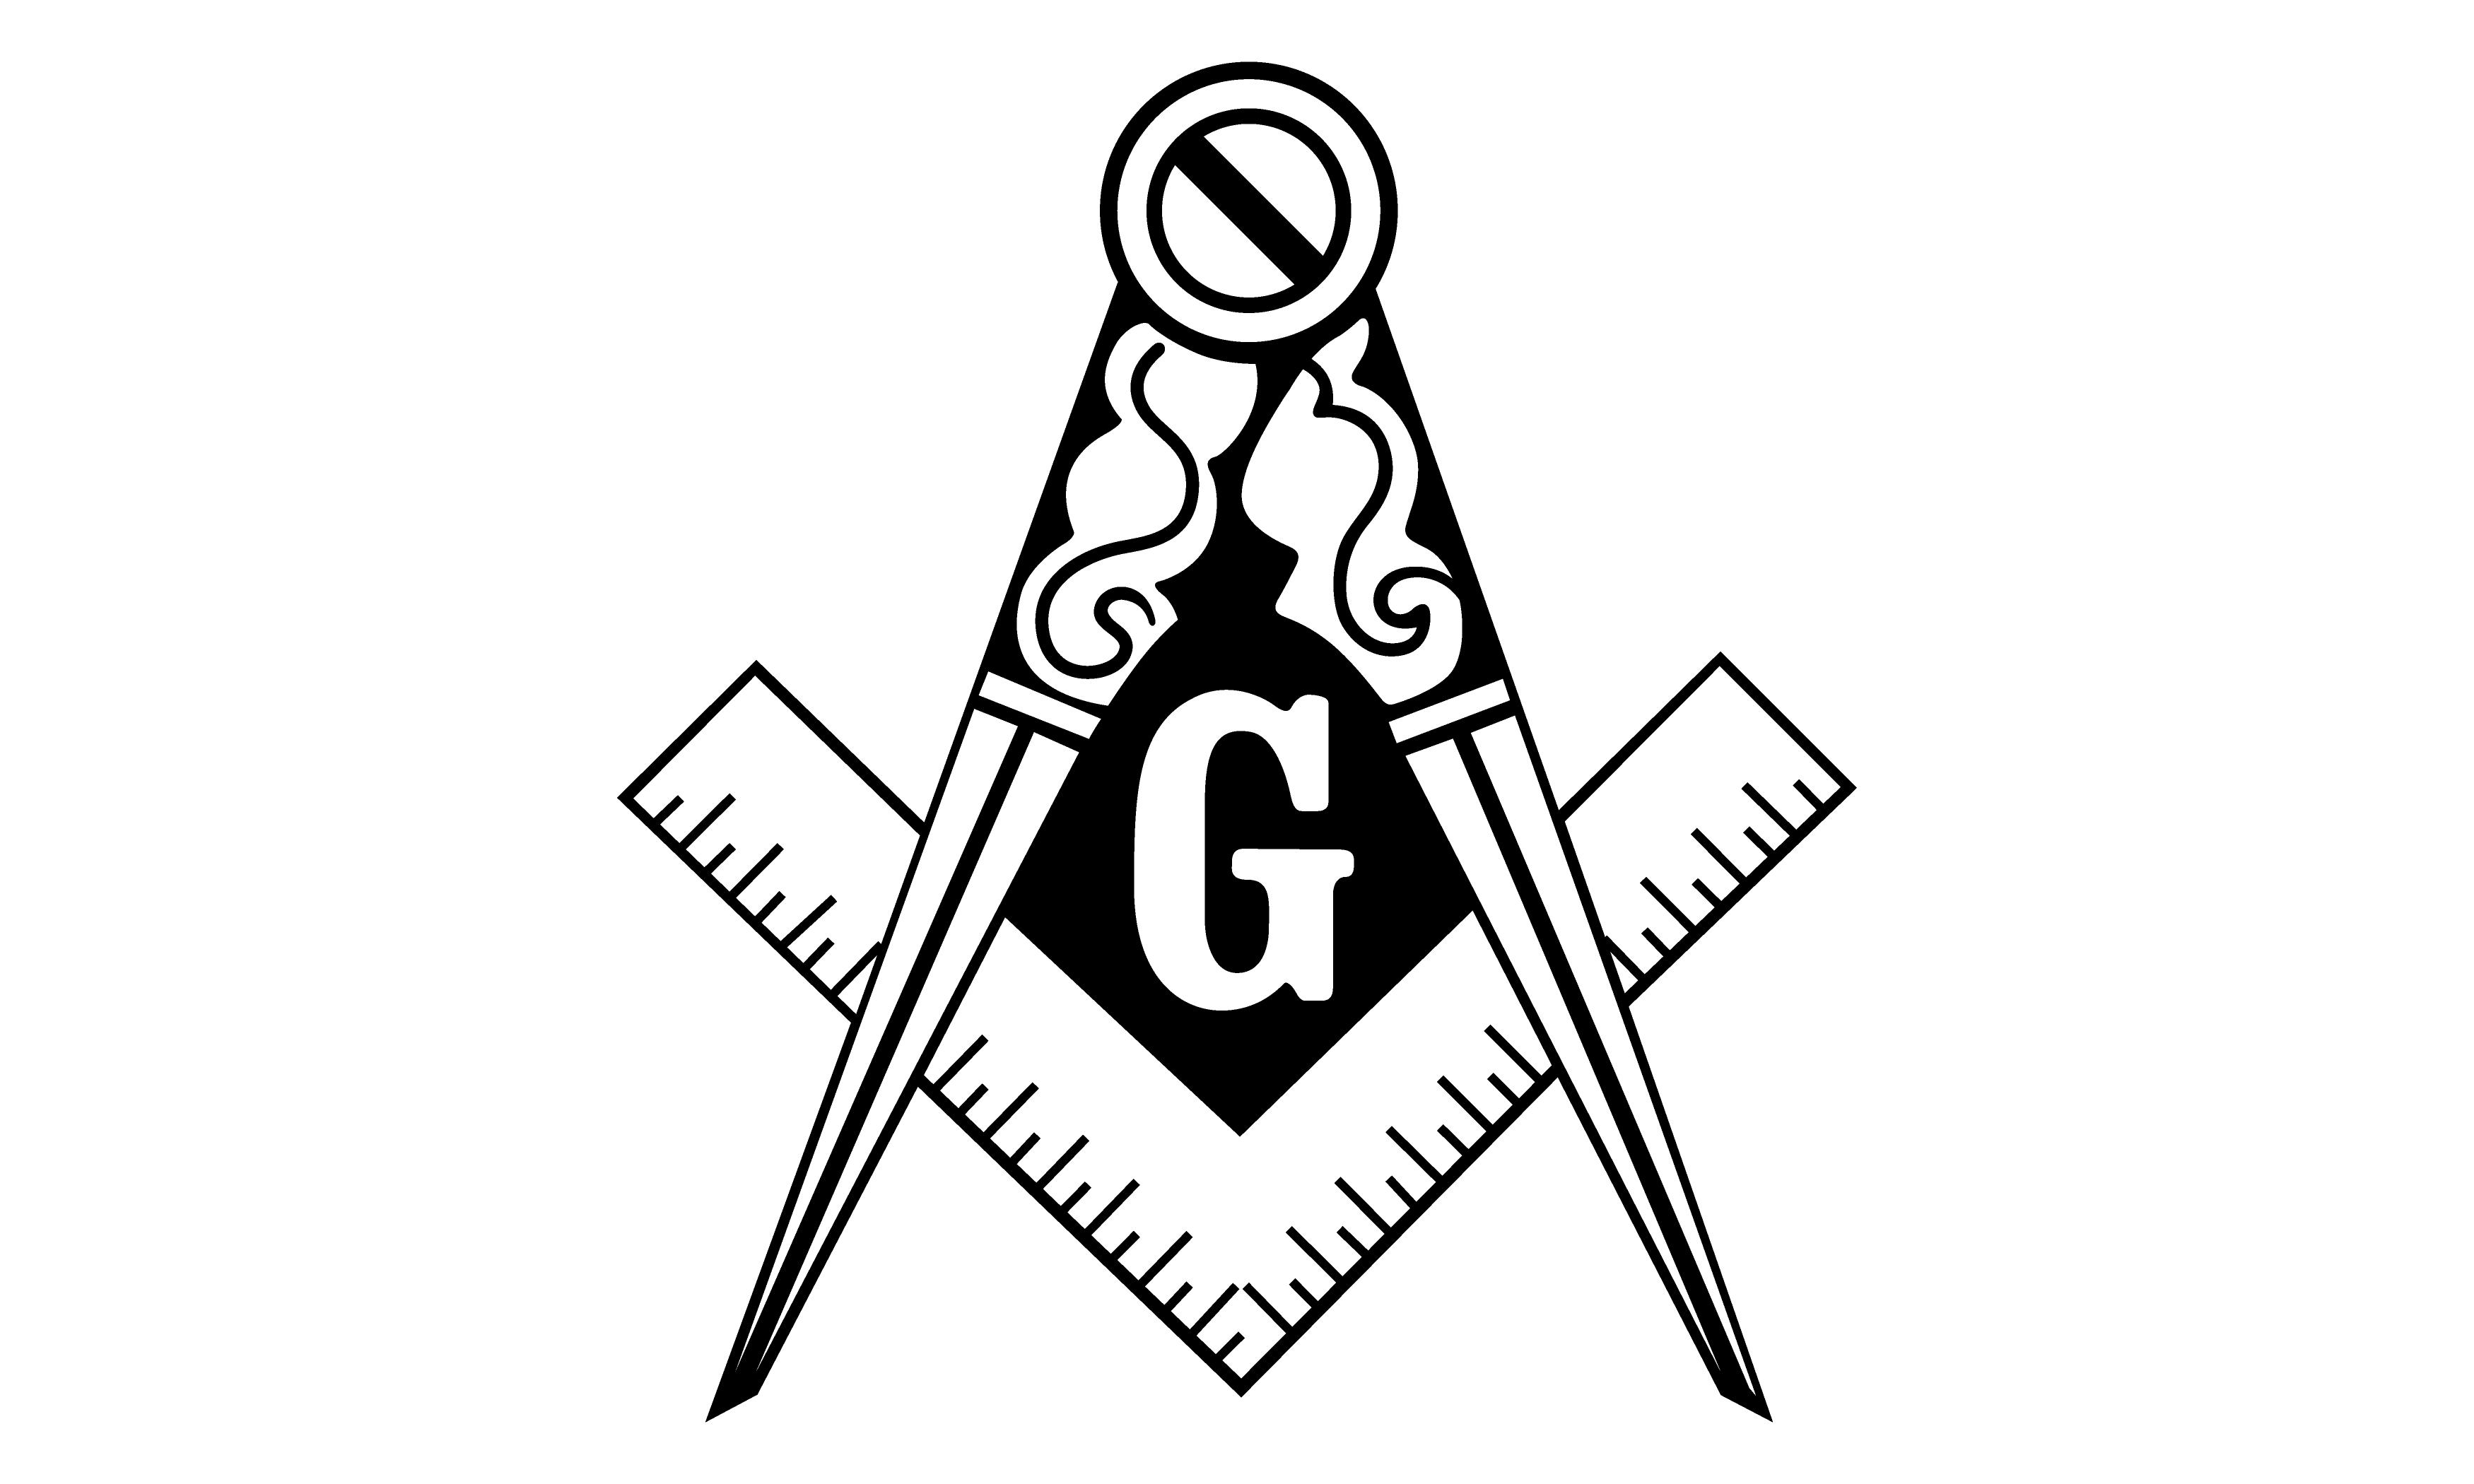 Freemason logo